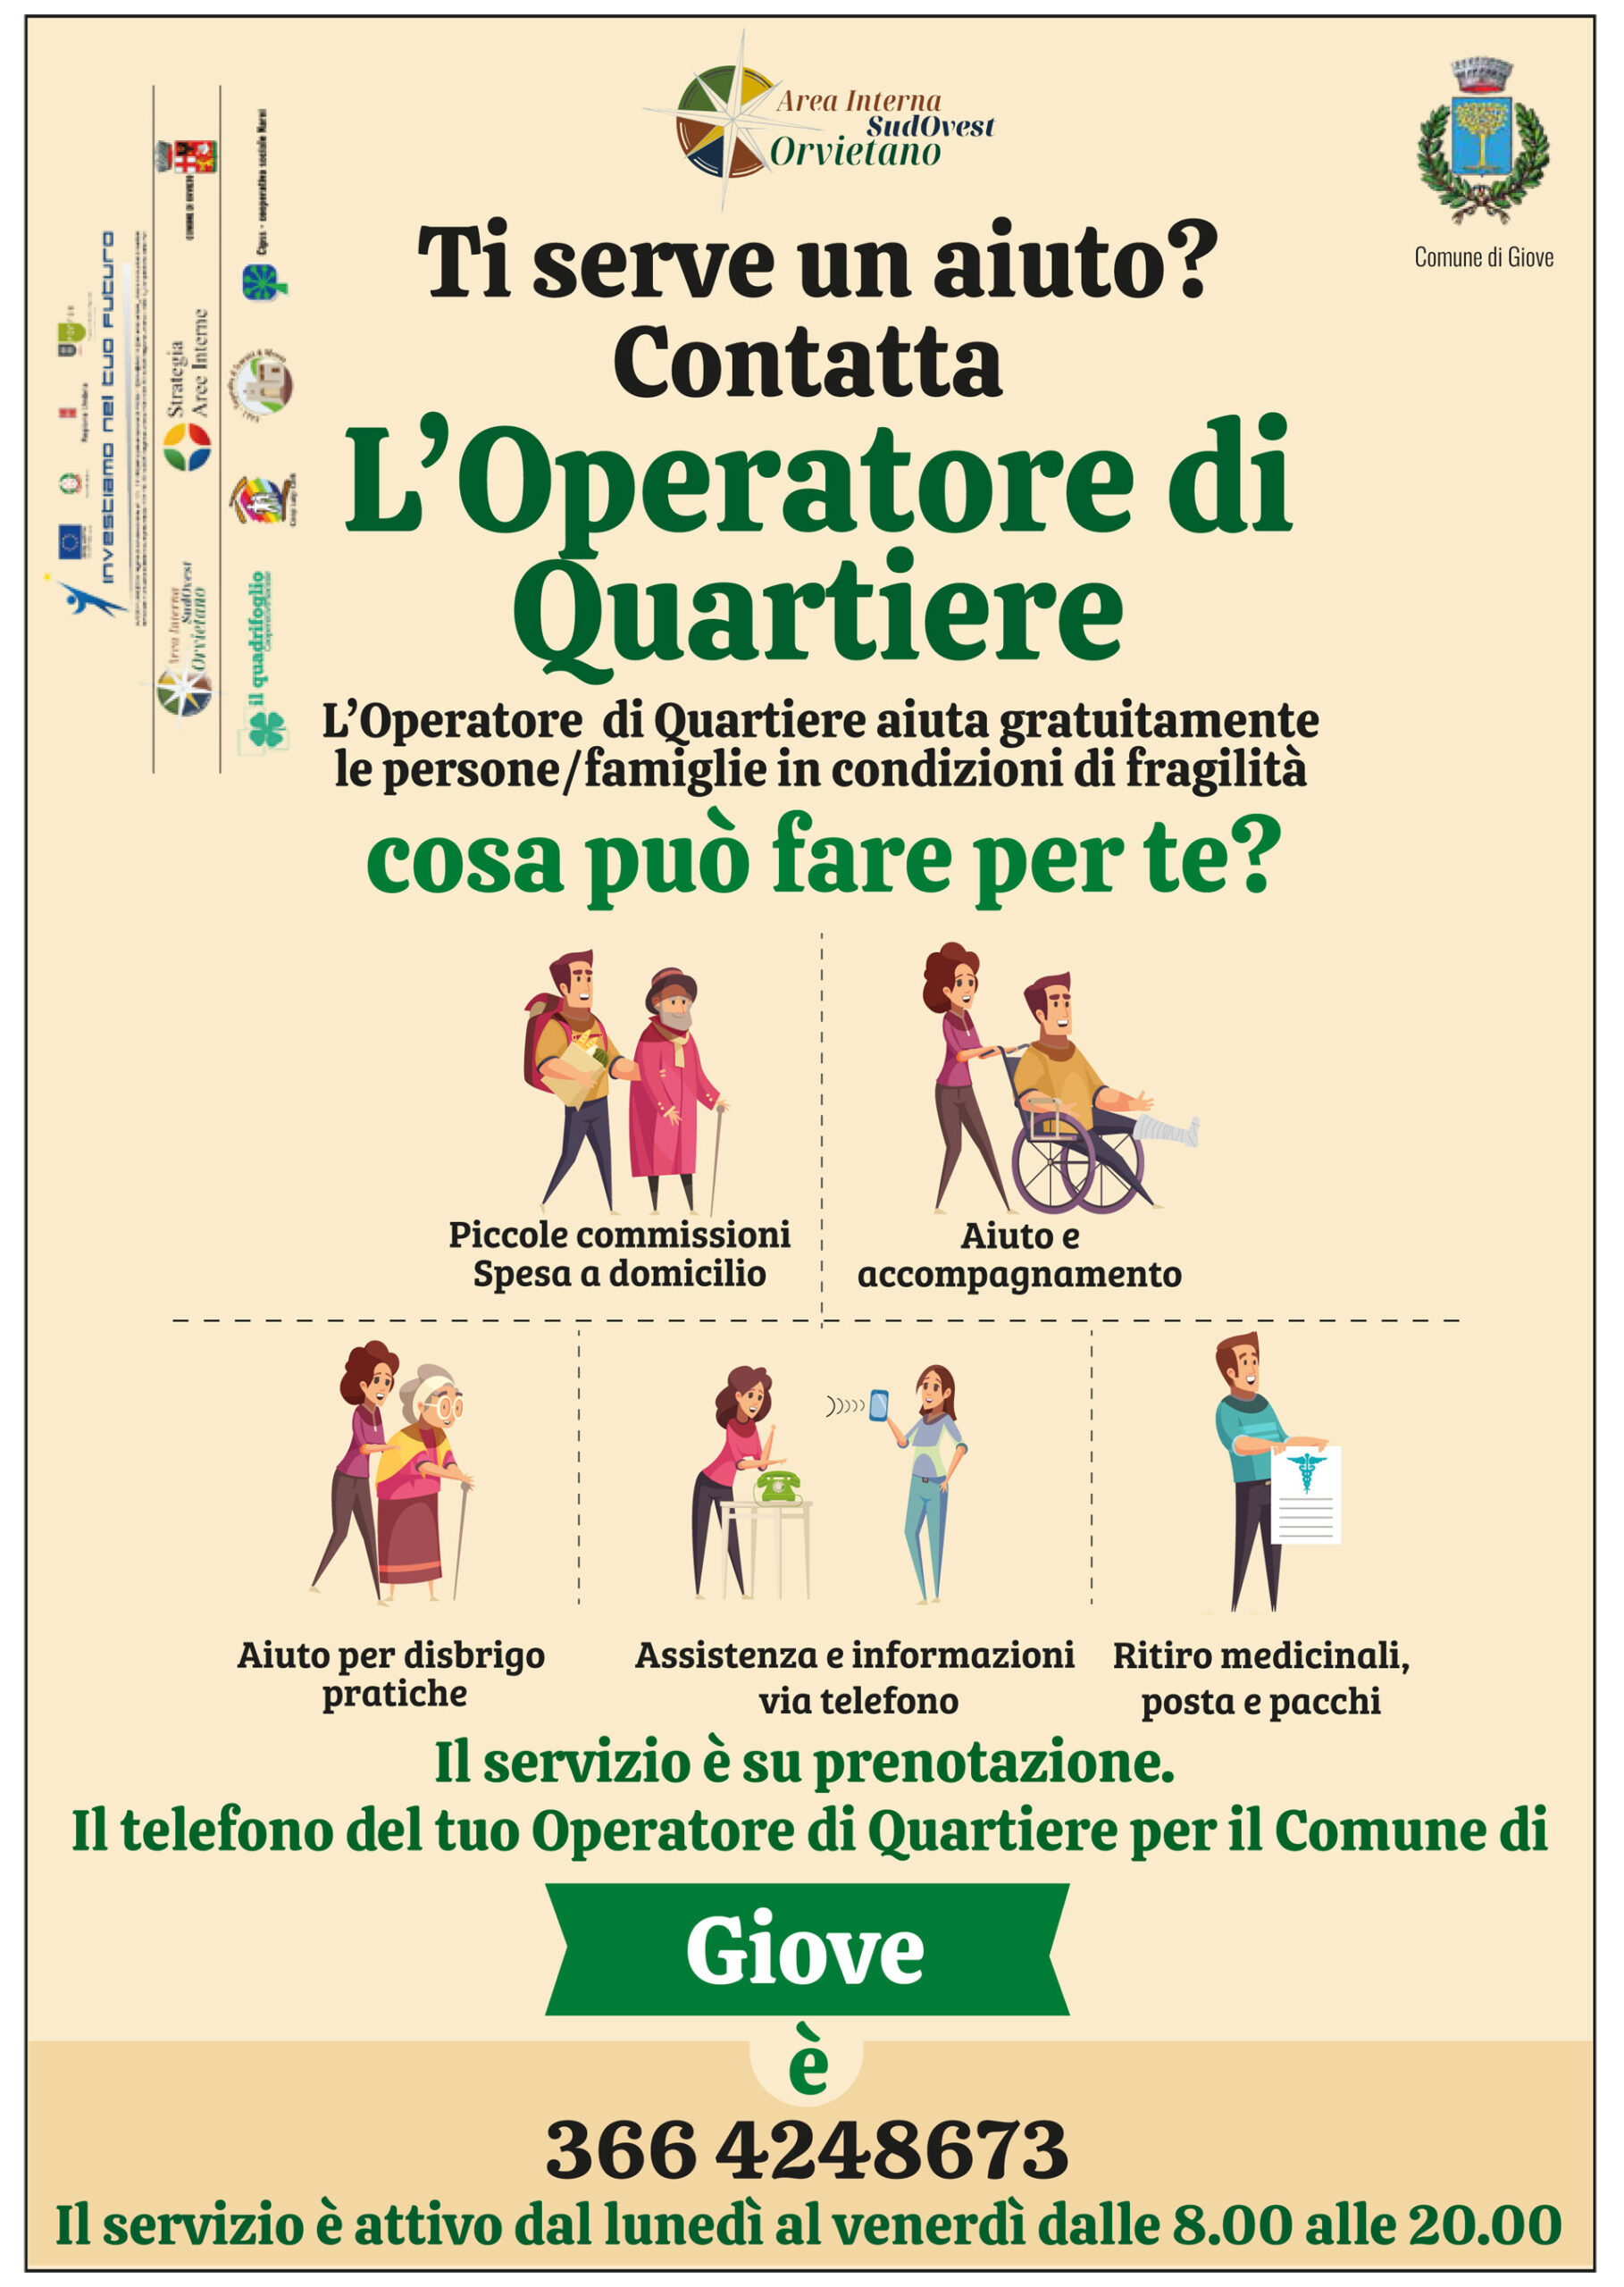 Cipss e ATI cooperative sociali Area Interna Sud Ovest Orvietano: avvio del Servizio di “Operatore Sociale di Quartiere”